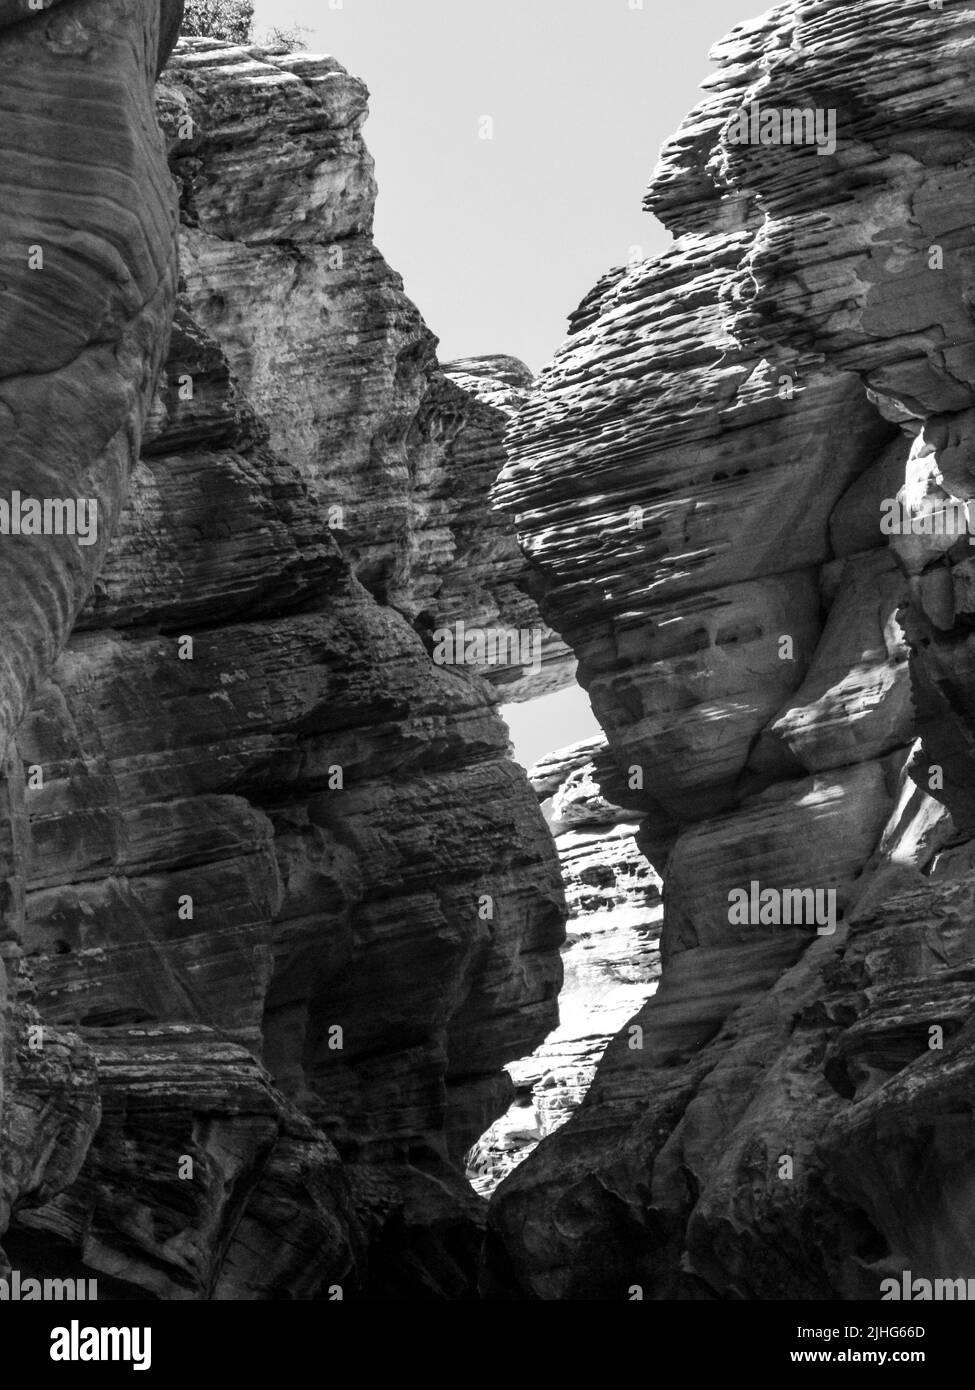 Vista en blanco y negro de los escarpados acantilados de arenisca erosionados, formando un Cañón Slot, en Willis Creek, Utah, EE.UU. Foto de stock